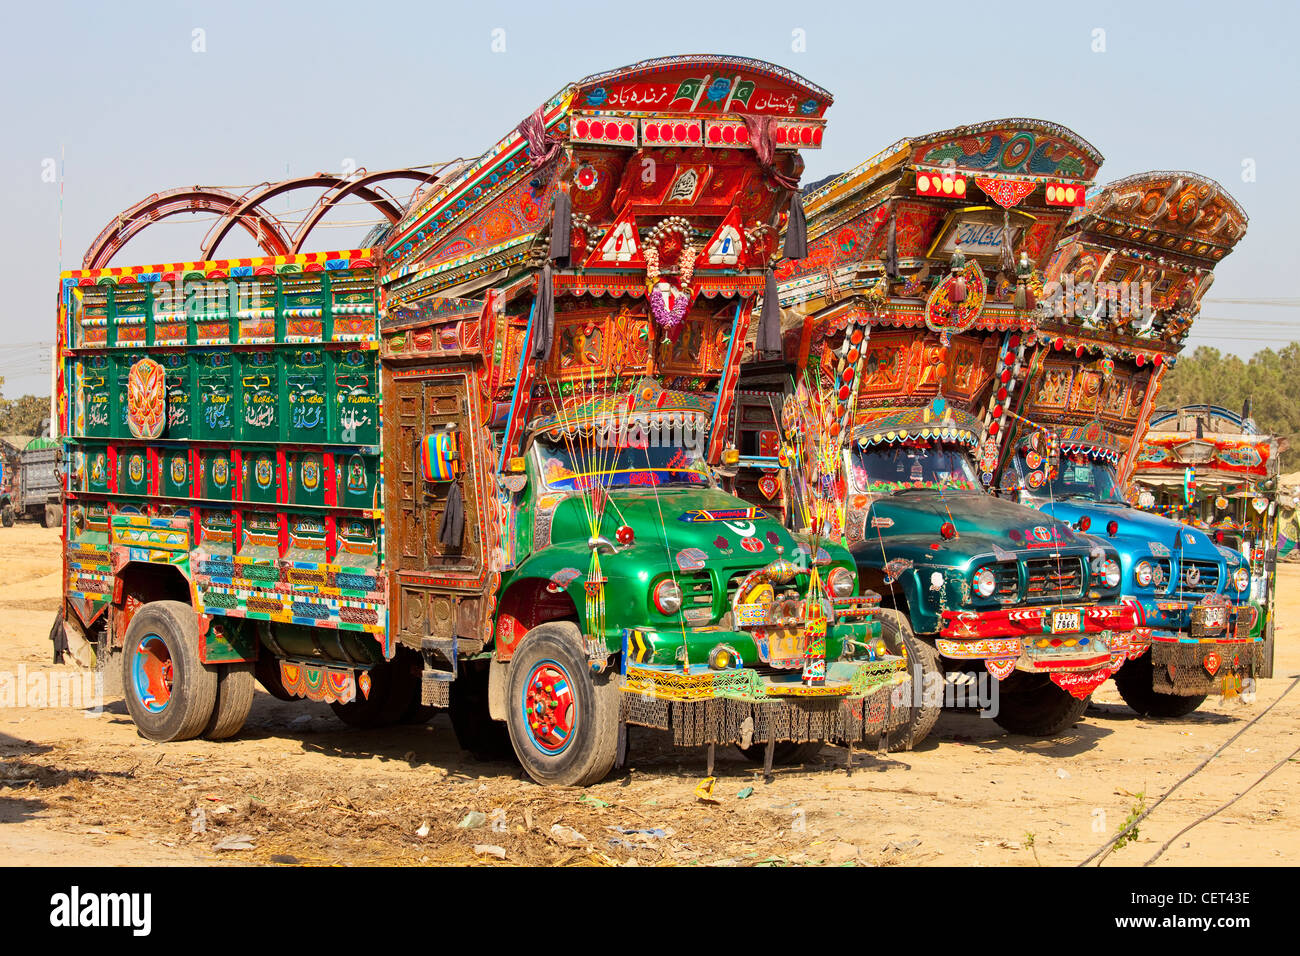 Les camions aux couleurs vives à Islamabad, Pakistan Banque D'Images